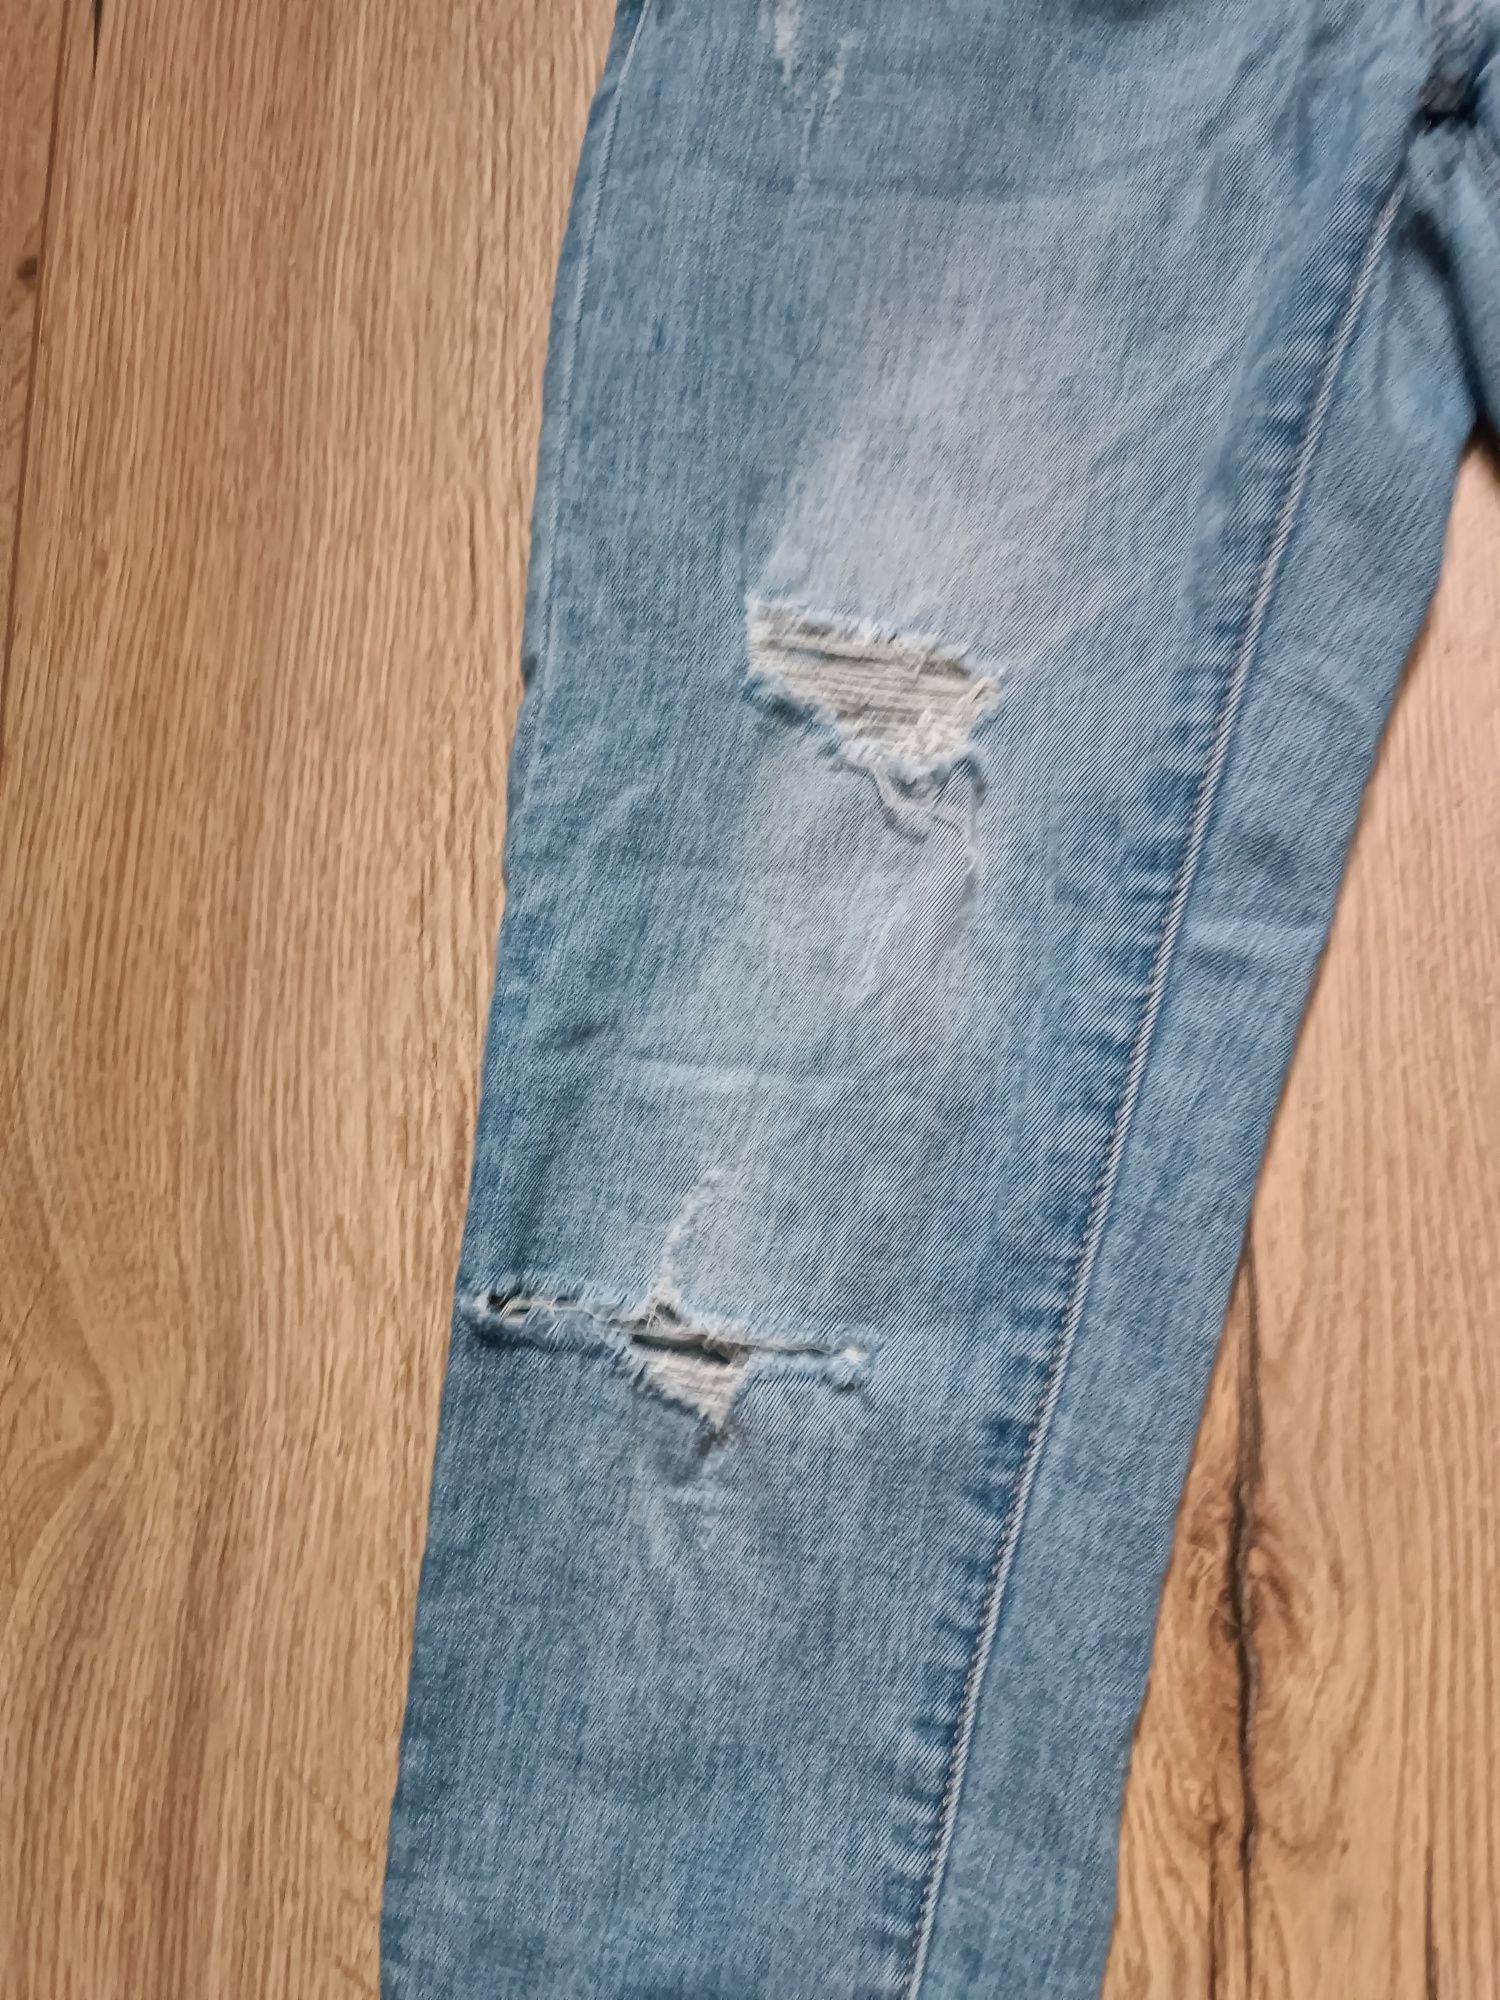 Używane spodnie jeansowe rozmiar S